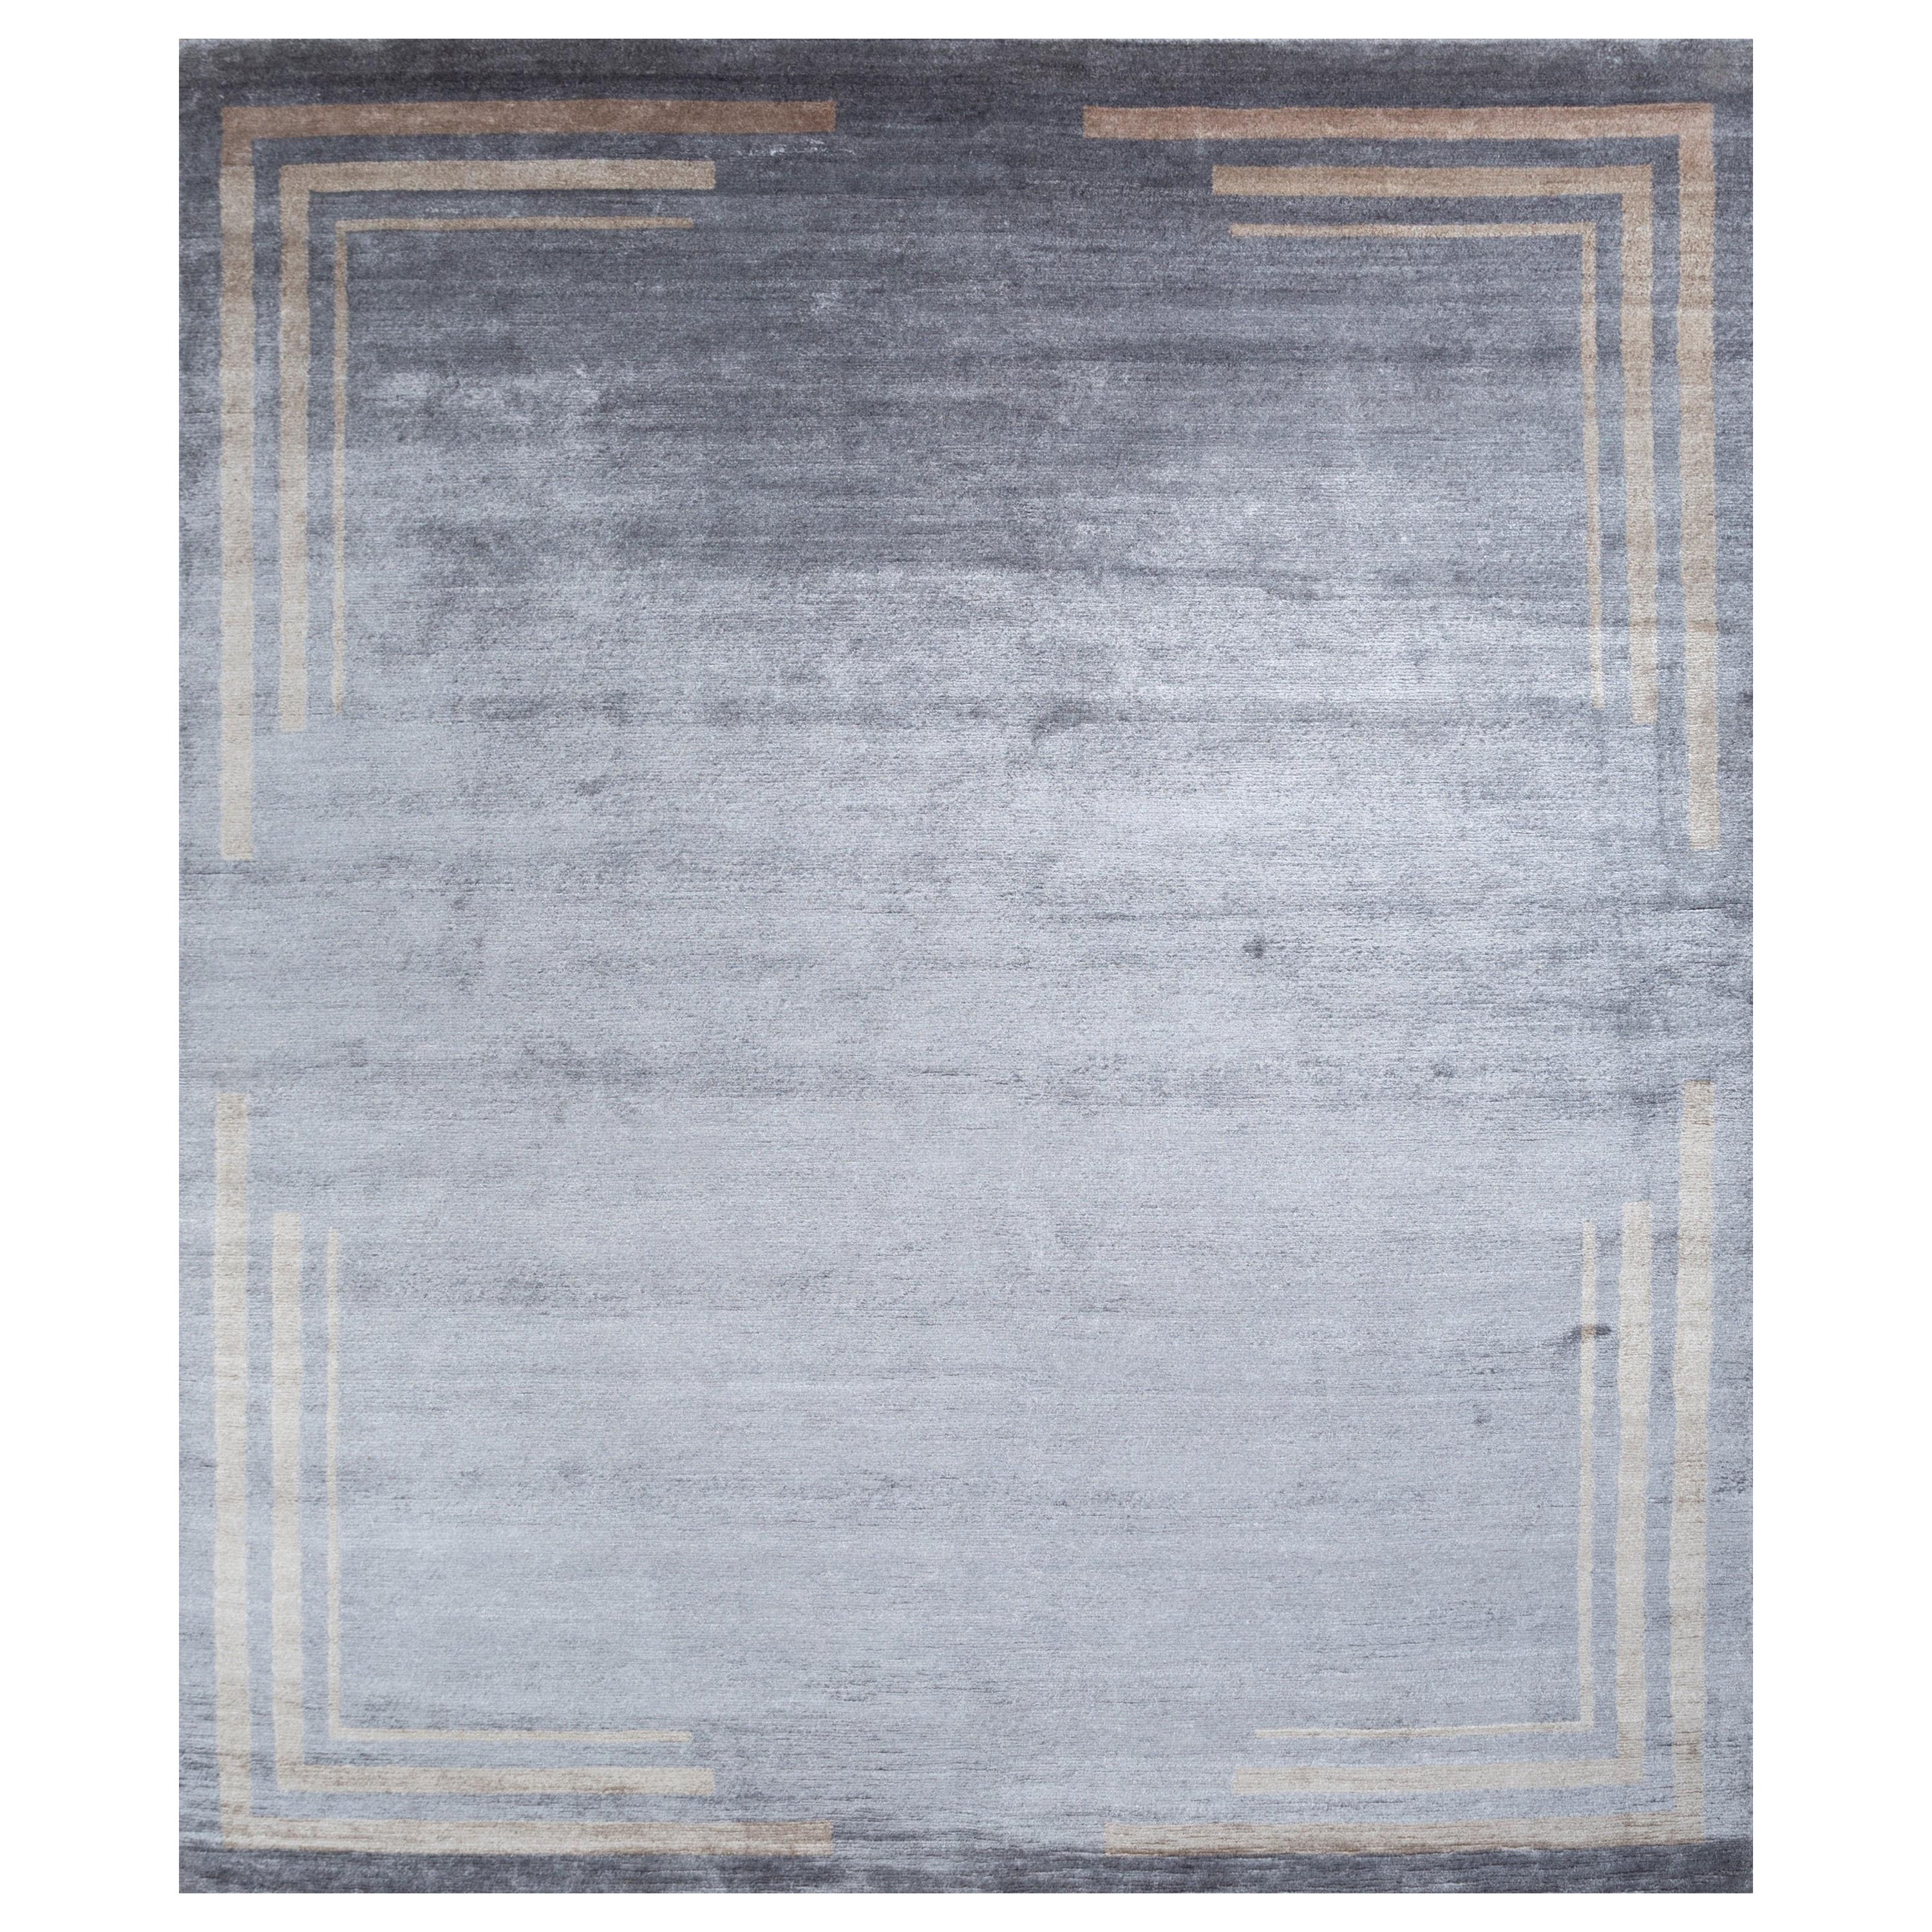 Nuanced Oasis Frost Gray & Weiß Sand 240X300 cm Handgeknüpfter Teppich in Nuancen